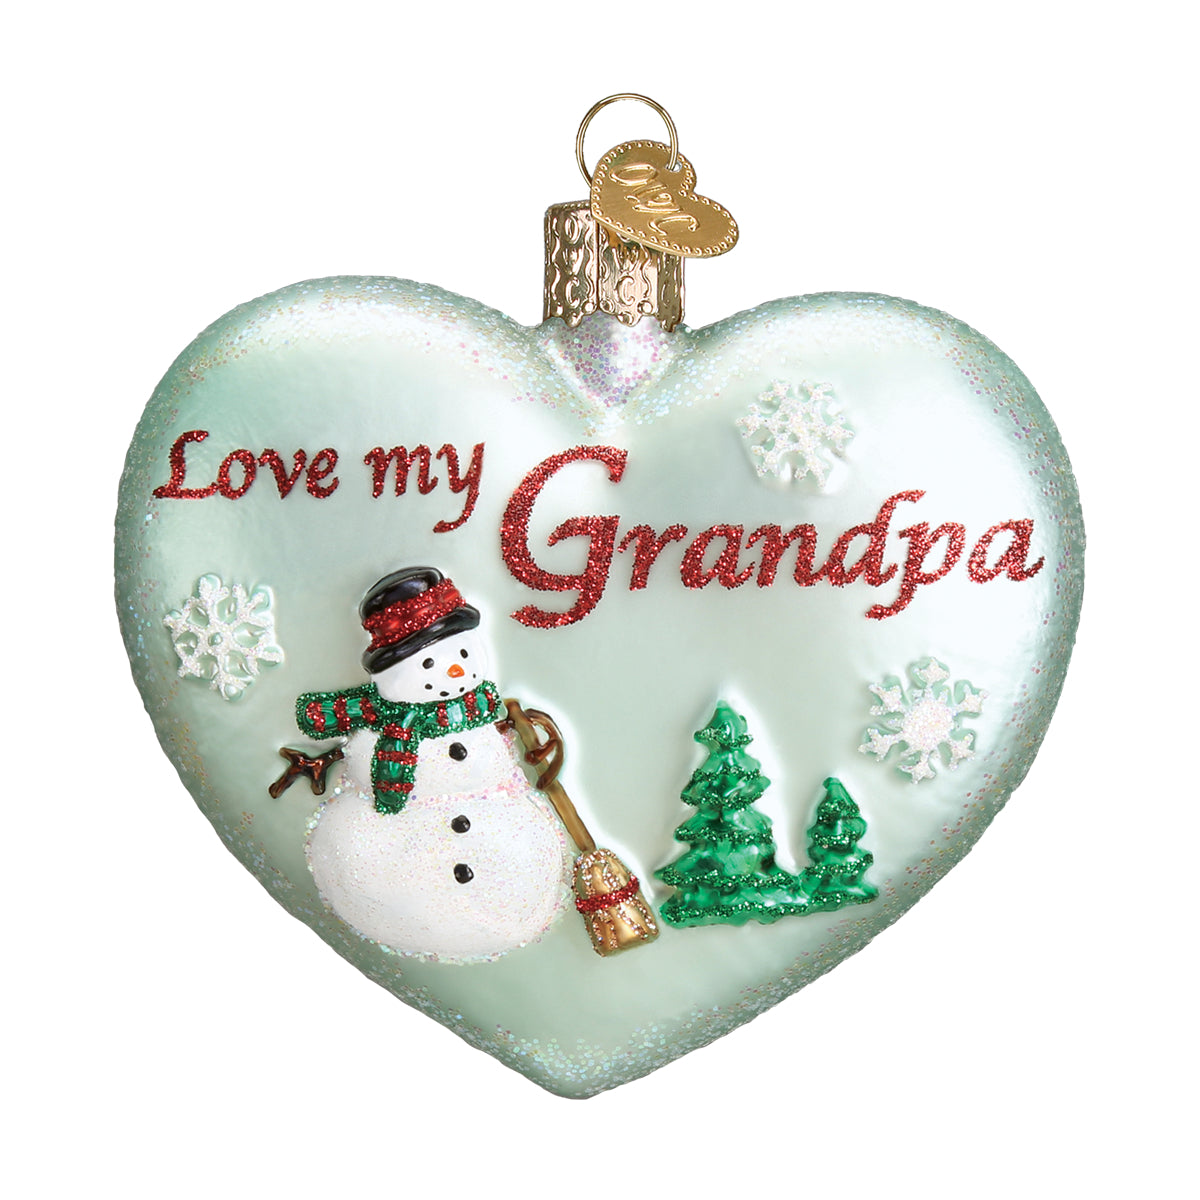 Grandpa Heart Ornament